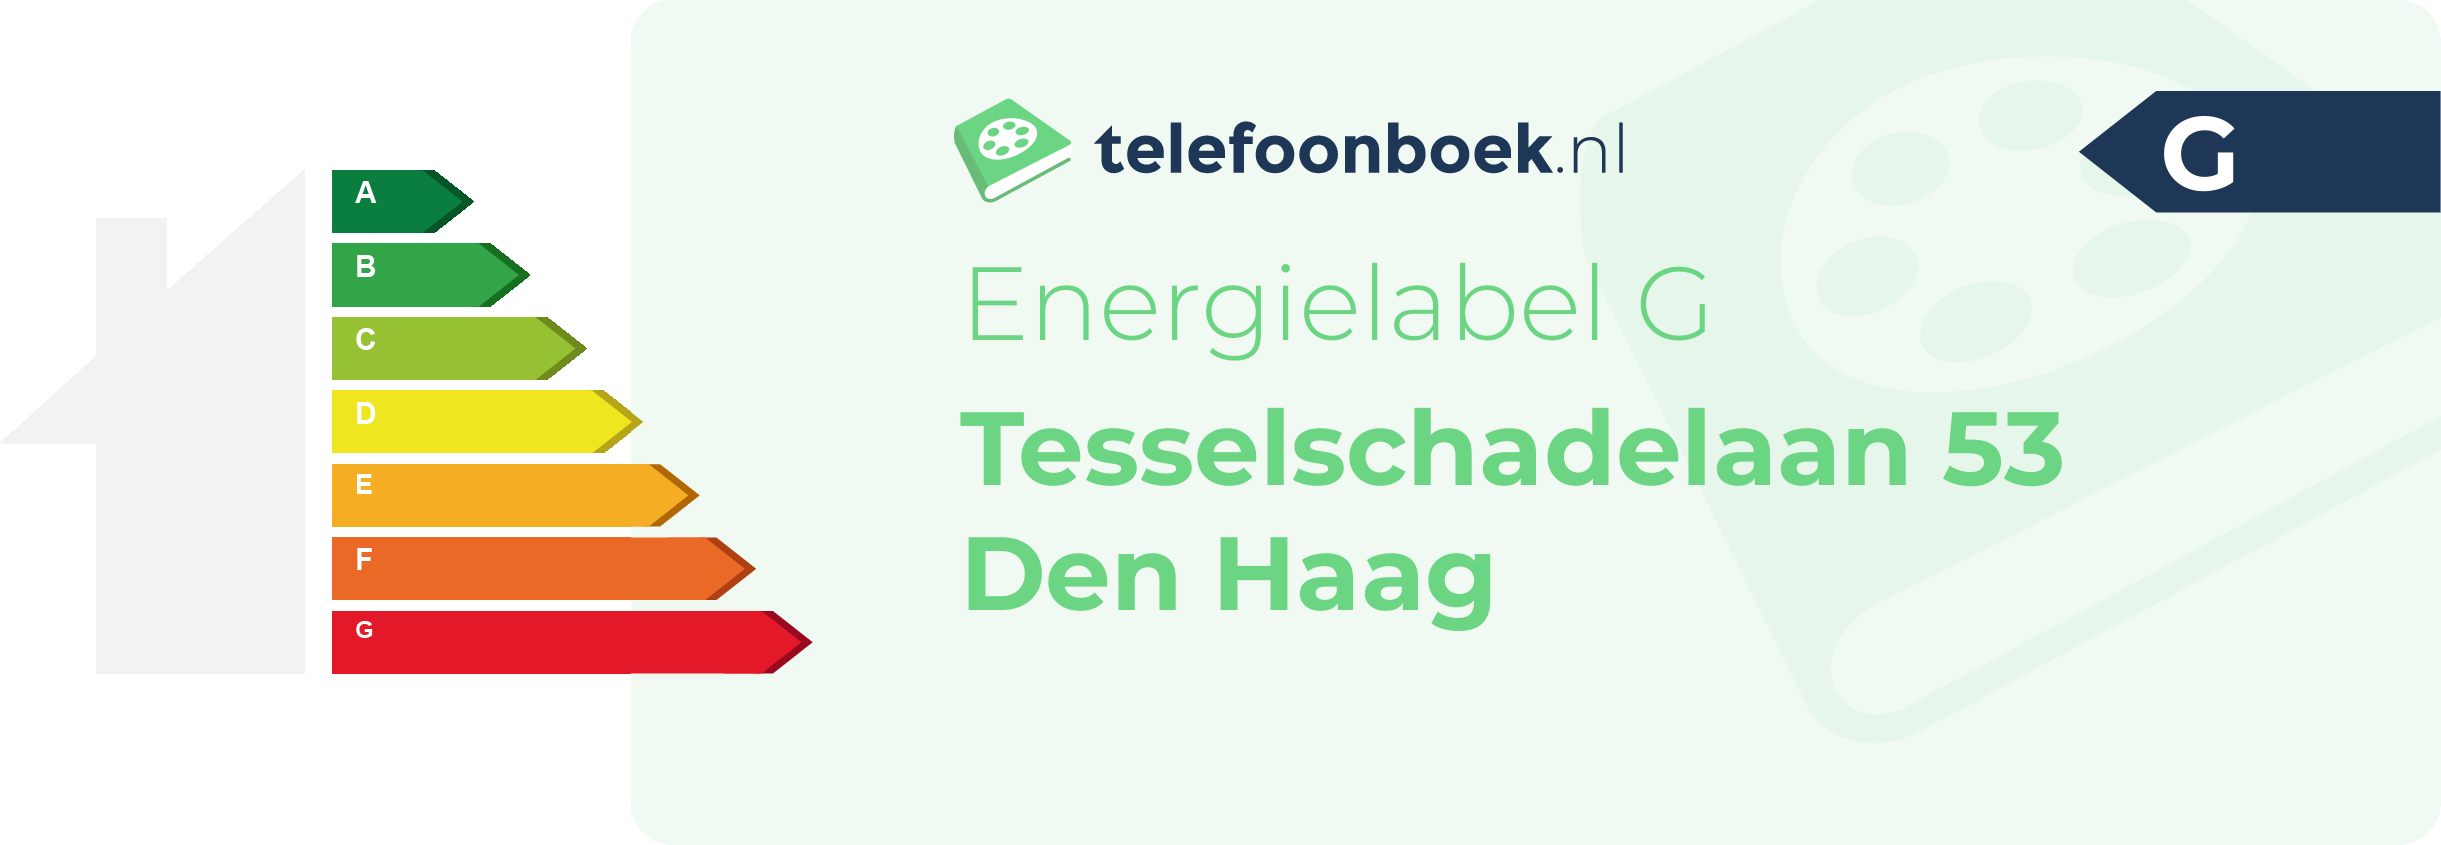 Energielabel Tesselschadelaan 53 Den Haag